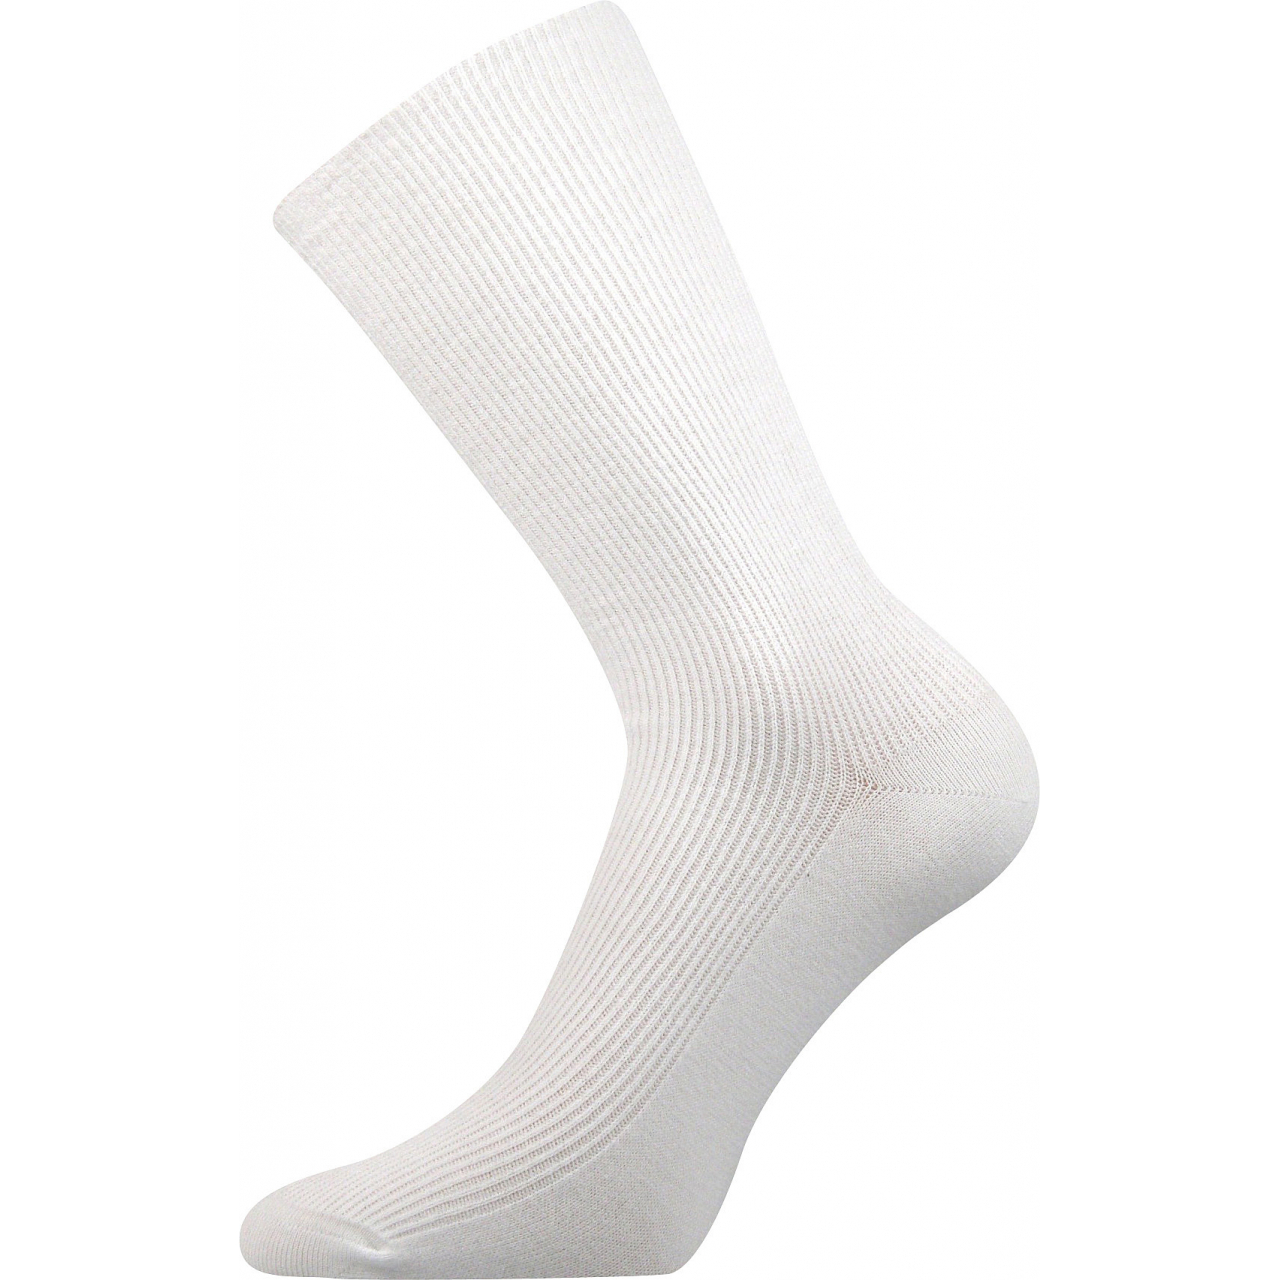 Ponožky speciální unisex Lonka Oregan - bílé, 39-42